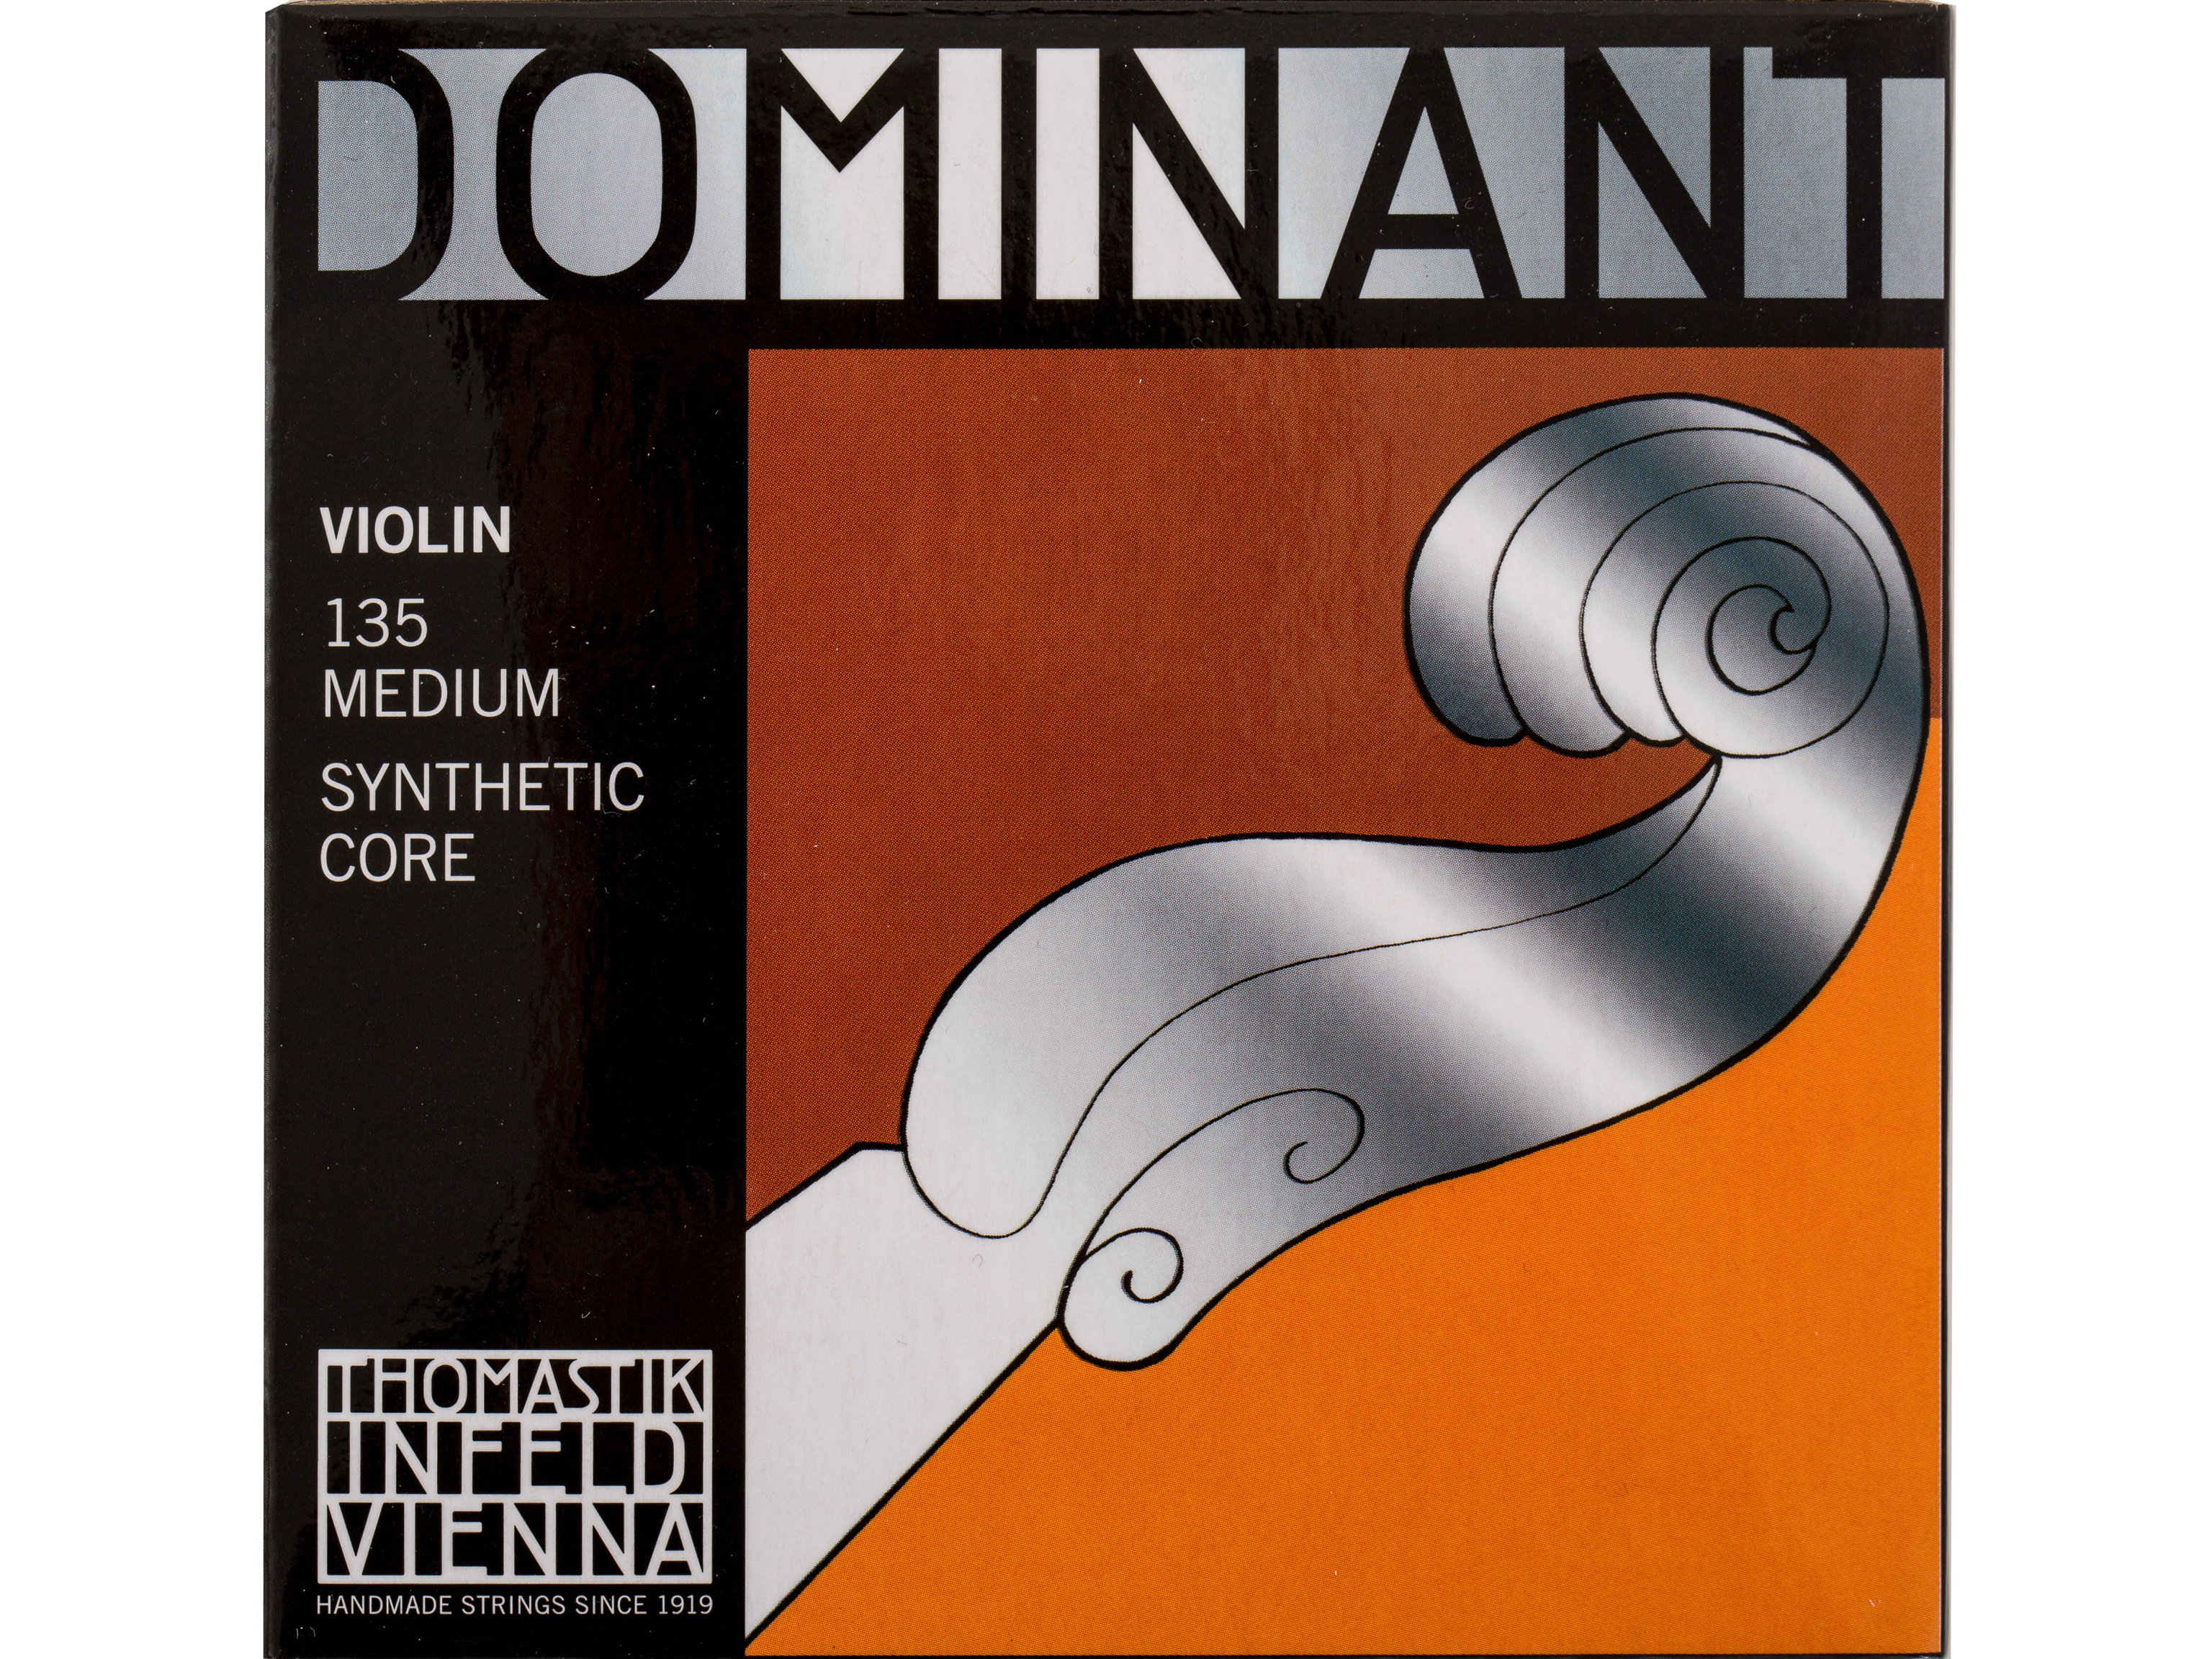 Thomastik 135 Violinsaitensatz 3/4 Dominant